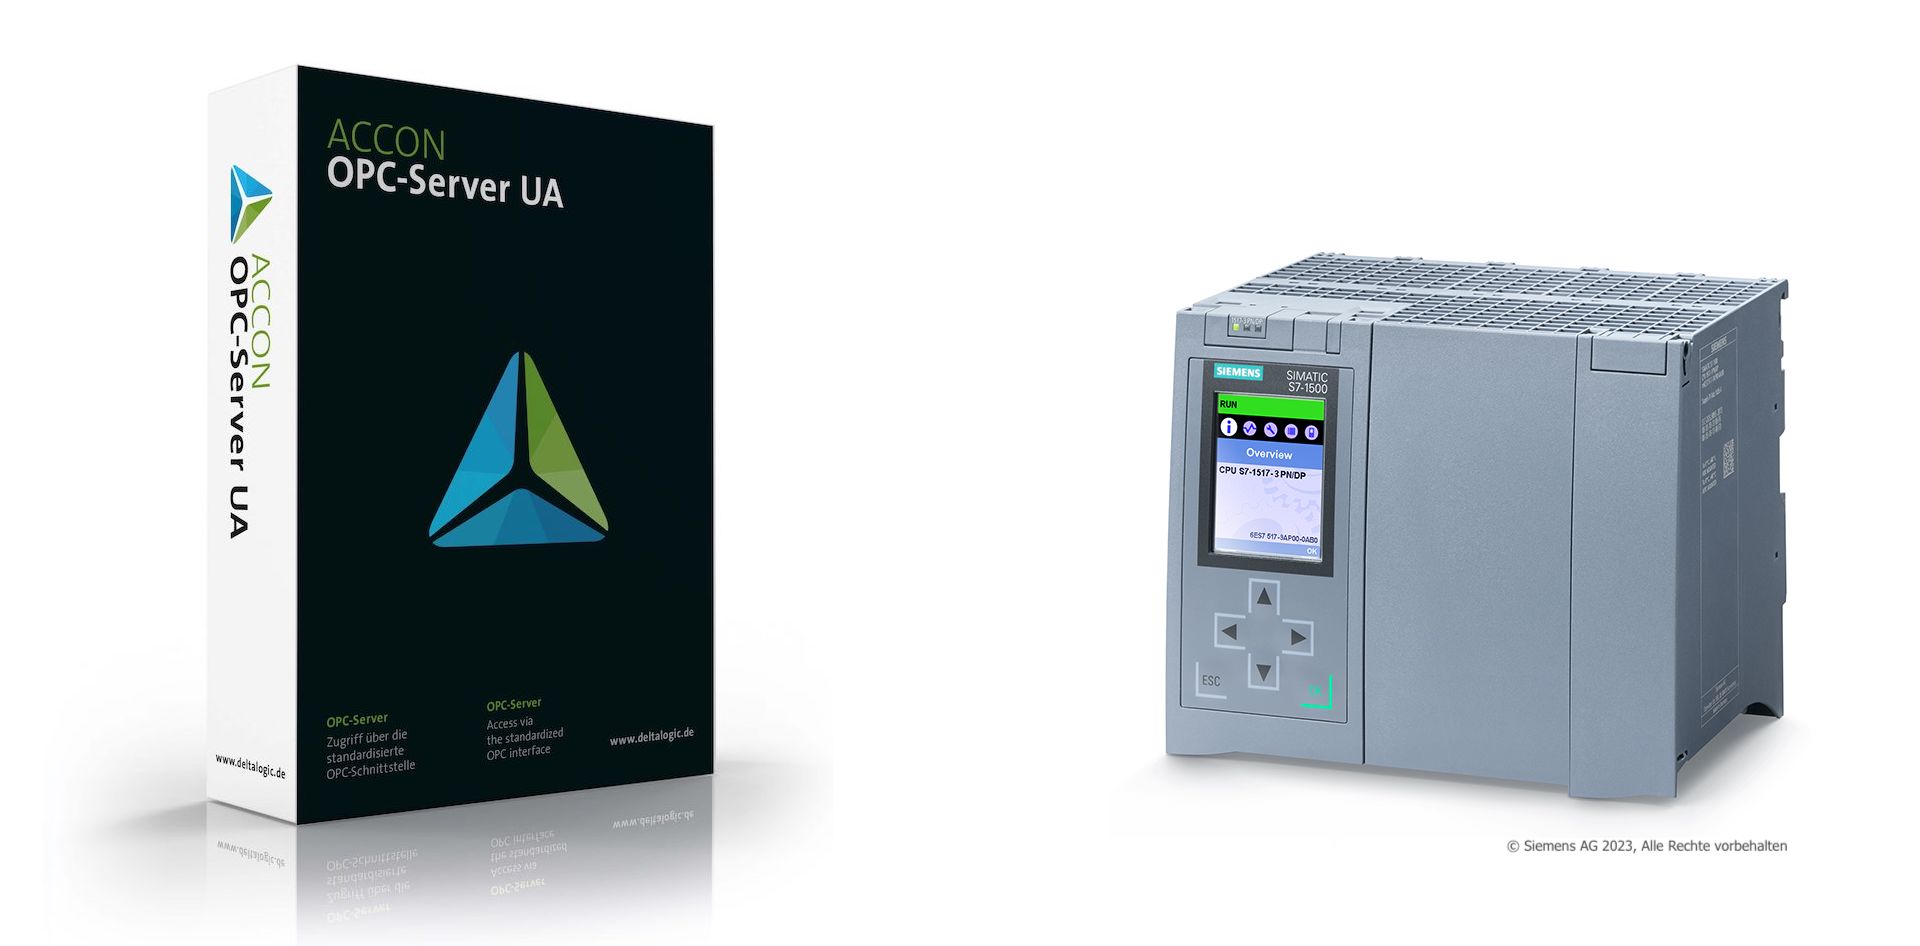 ACCON-OPC-Server UA jetzt mit Siemens SINUMERIK-Support